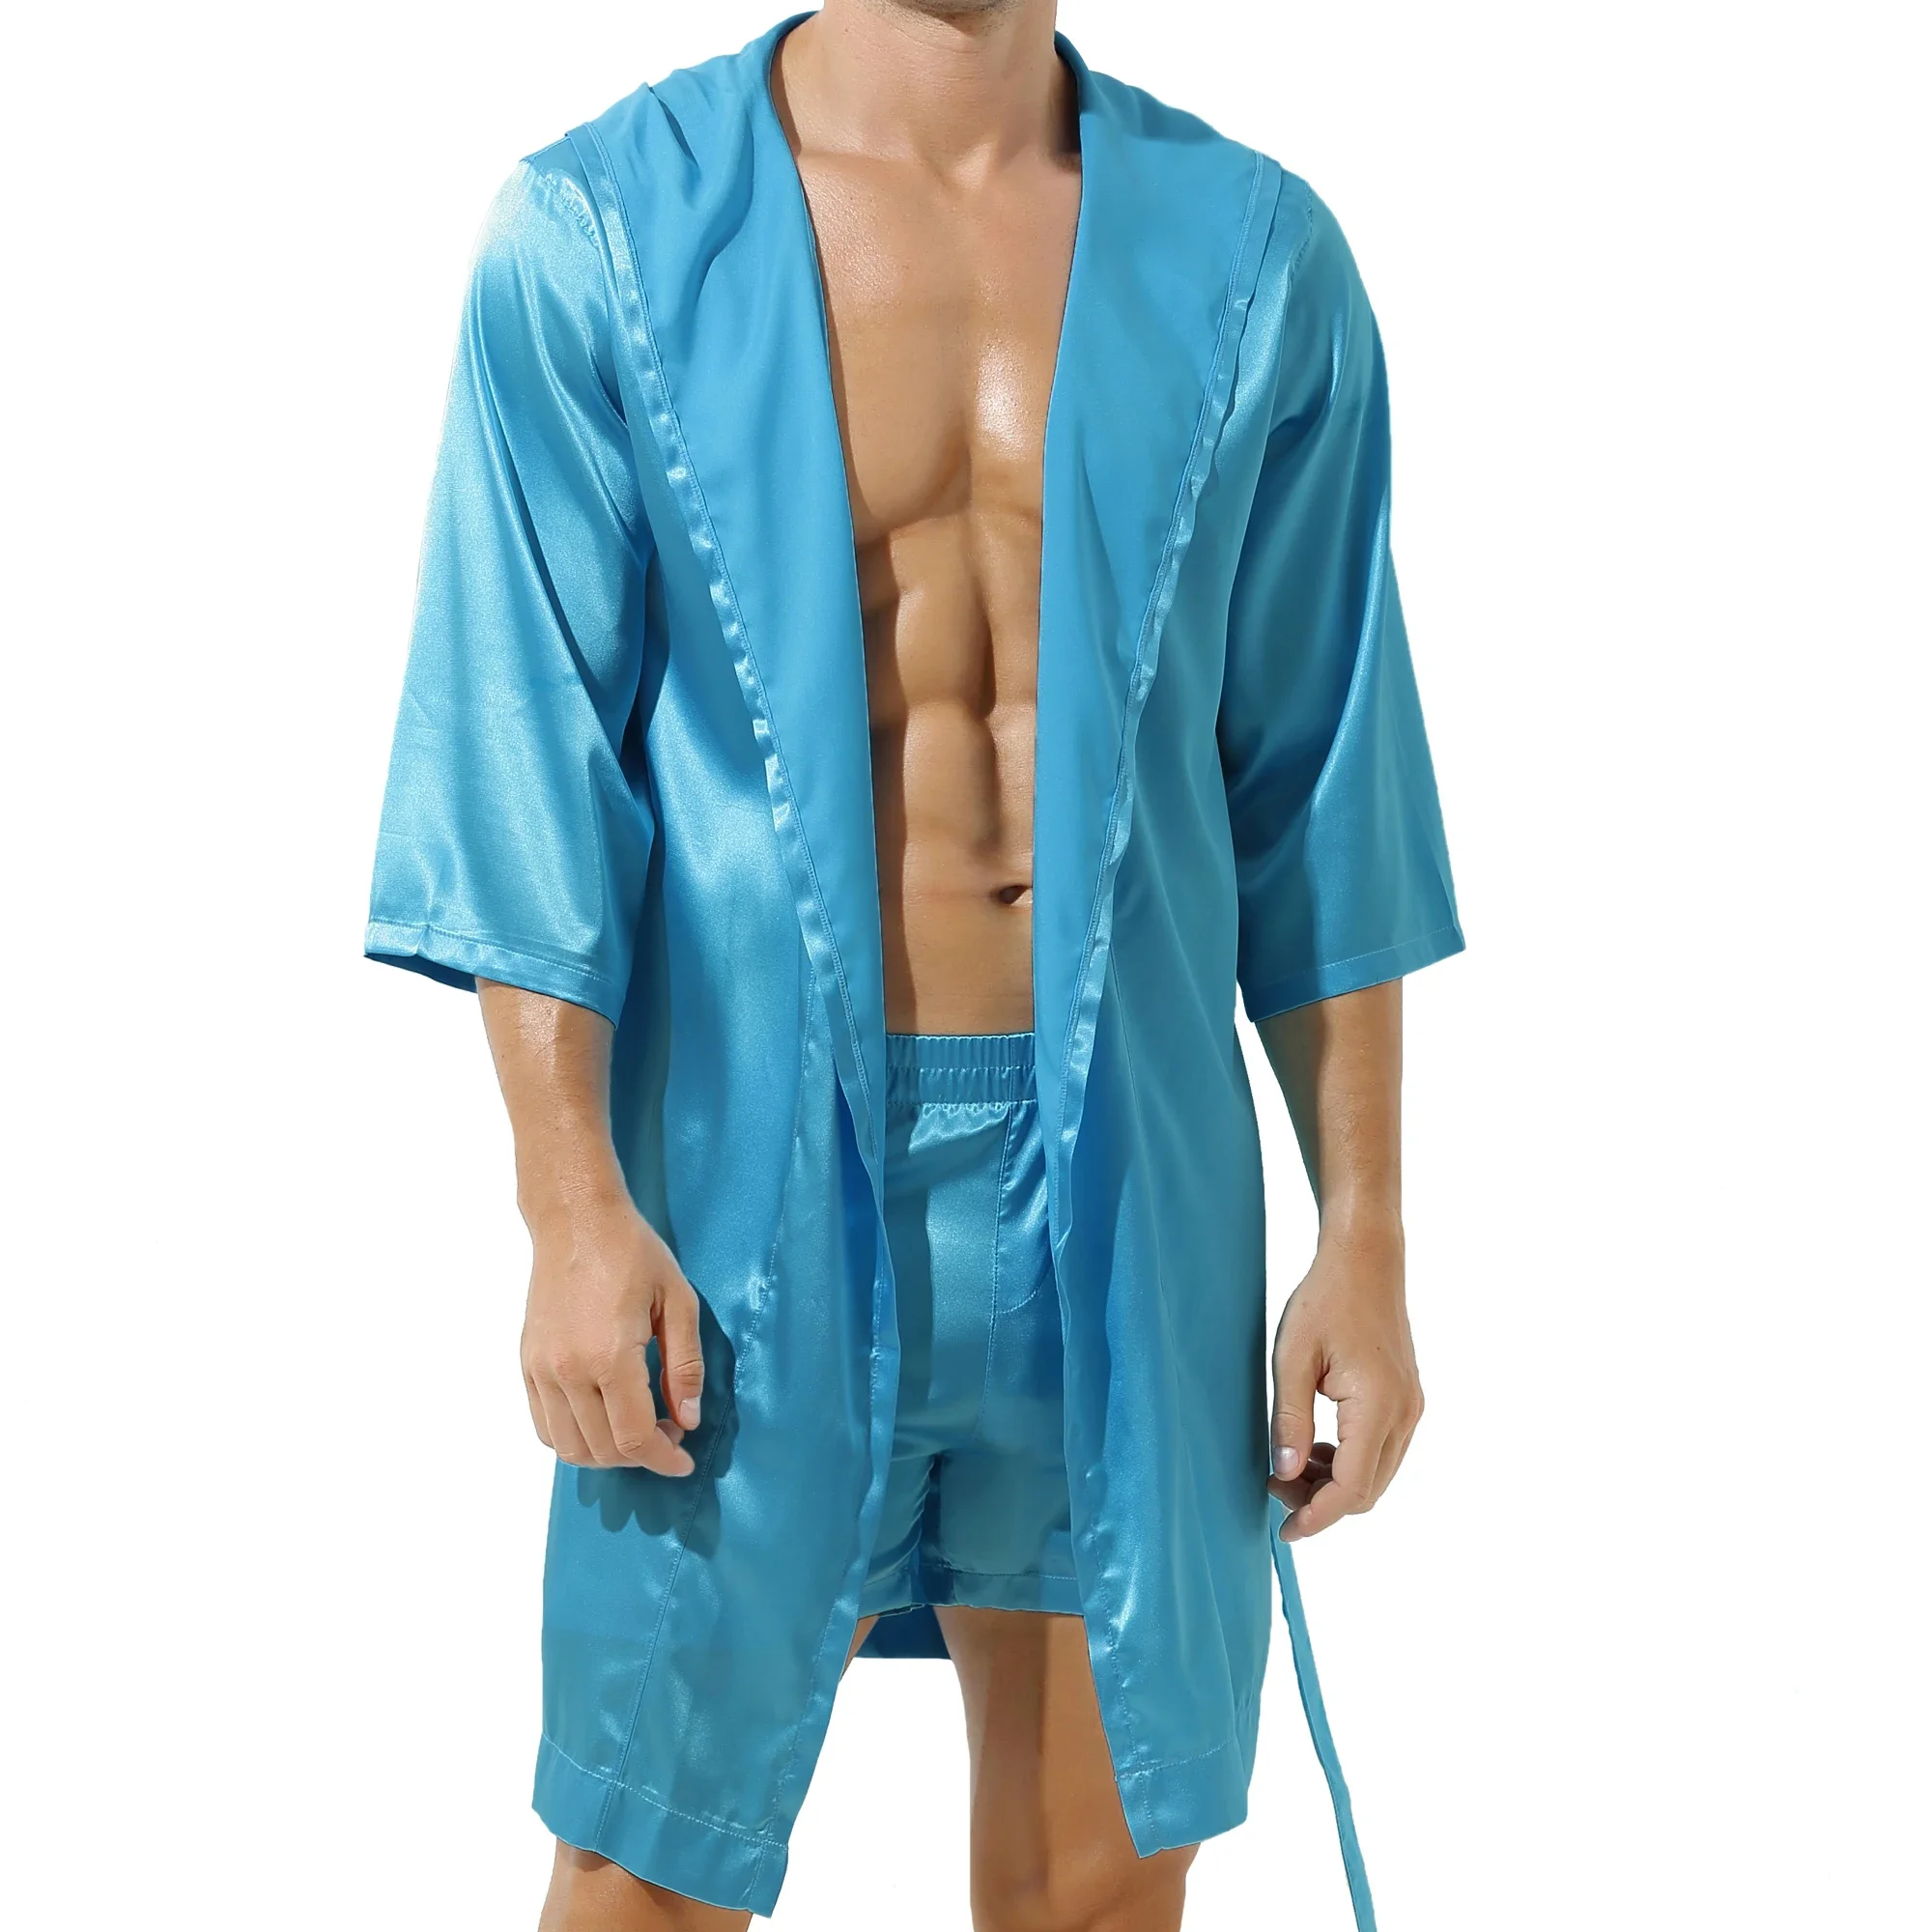 Мужские шелковые пятна кимоно халат шорты для халаты набор пижам одежда сексуальные одежды атласная одежда для одежды для сочи